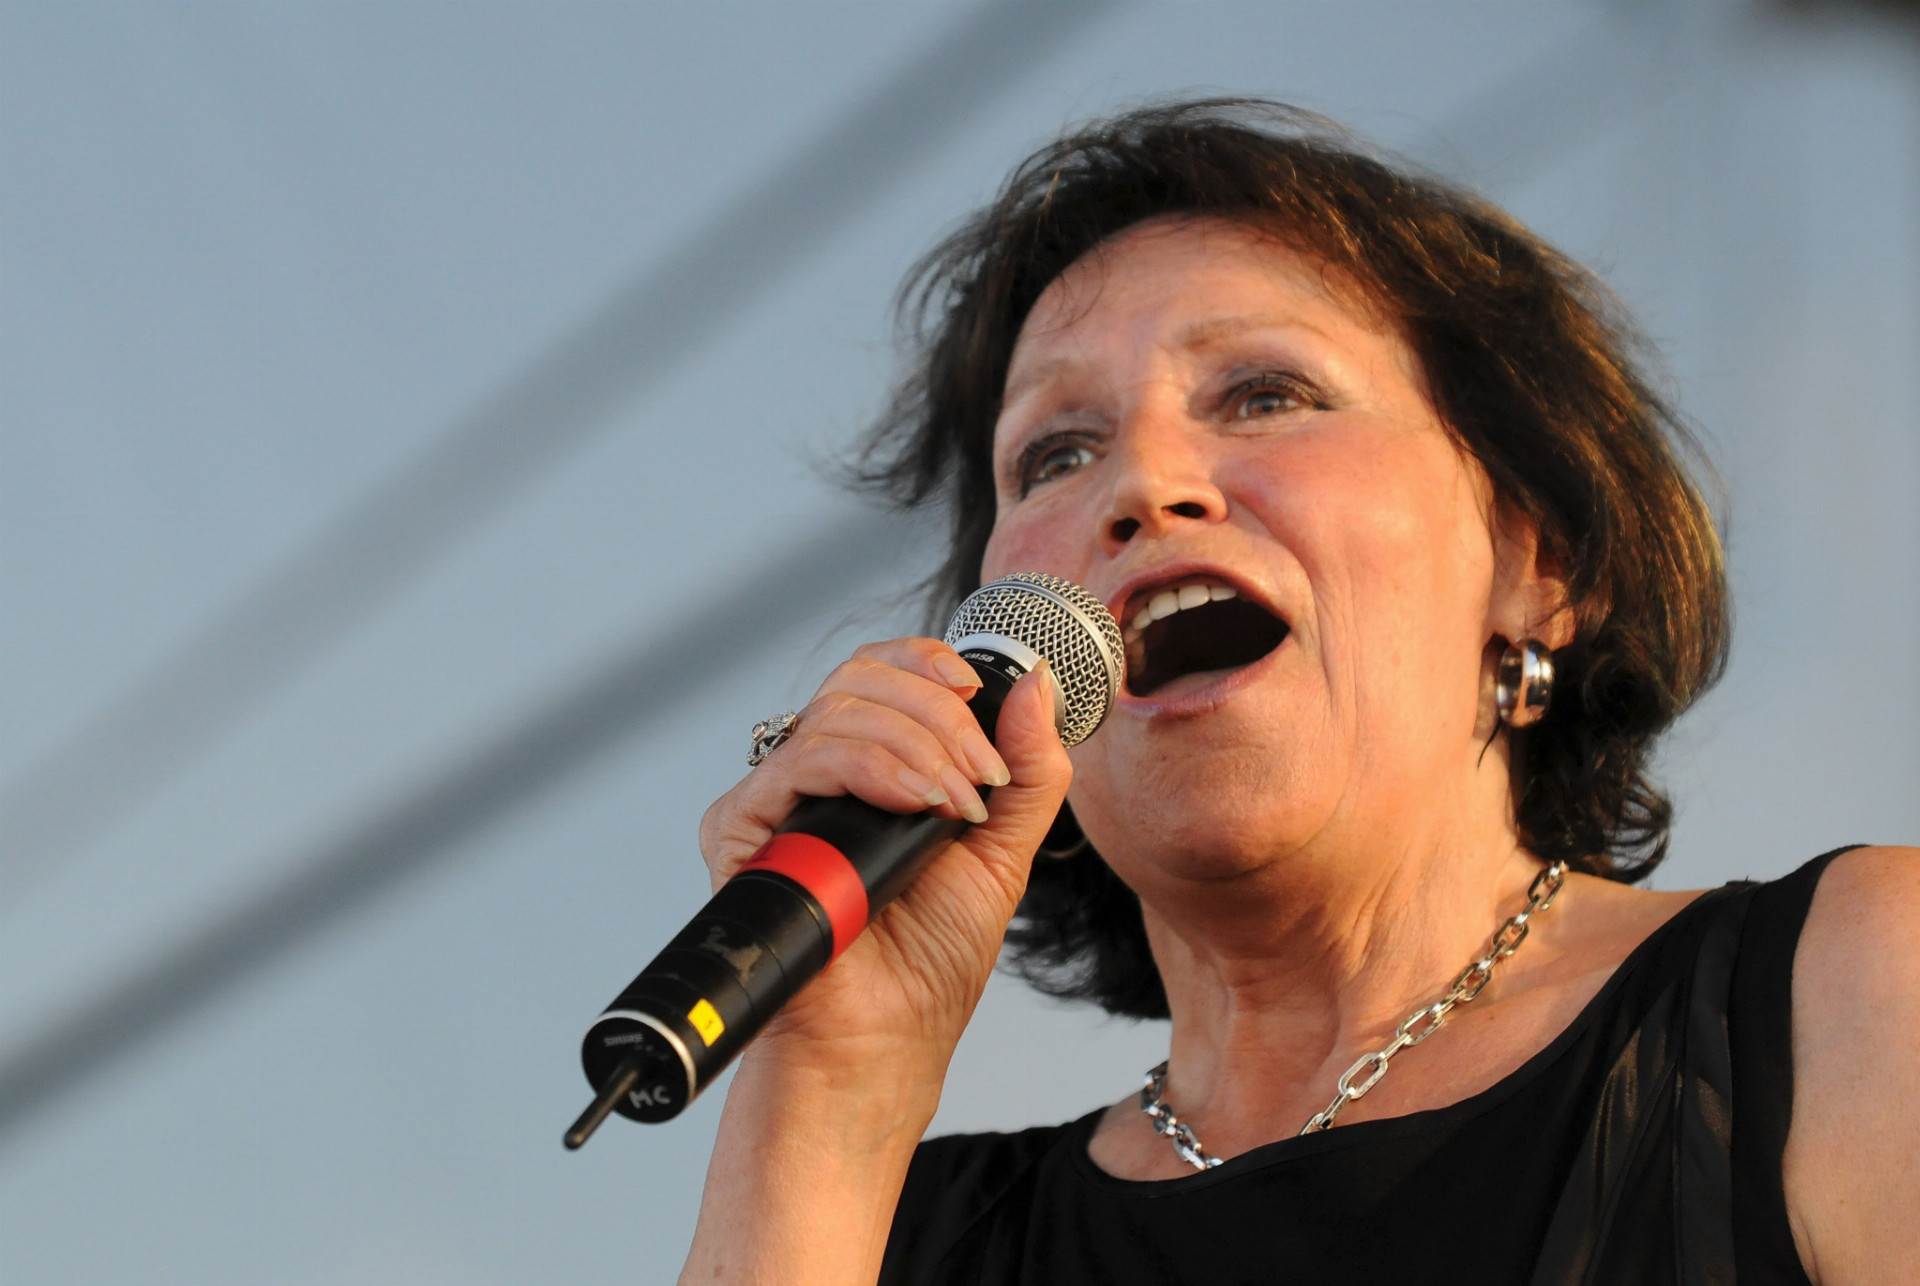 1. novembra 1942 sa narodila v Českých Budejoviciach česká speváčka Marta Kubišová. Na archívnej snímke česká speváčka Marta Kubišová počas vystúpenia na multikultúrnom festivale Bažant Pohoda 17. júla 2009 na letisku v Trenčíne.